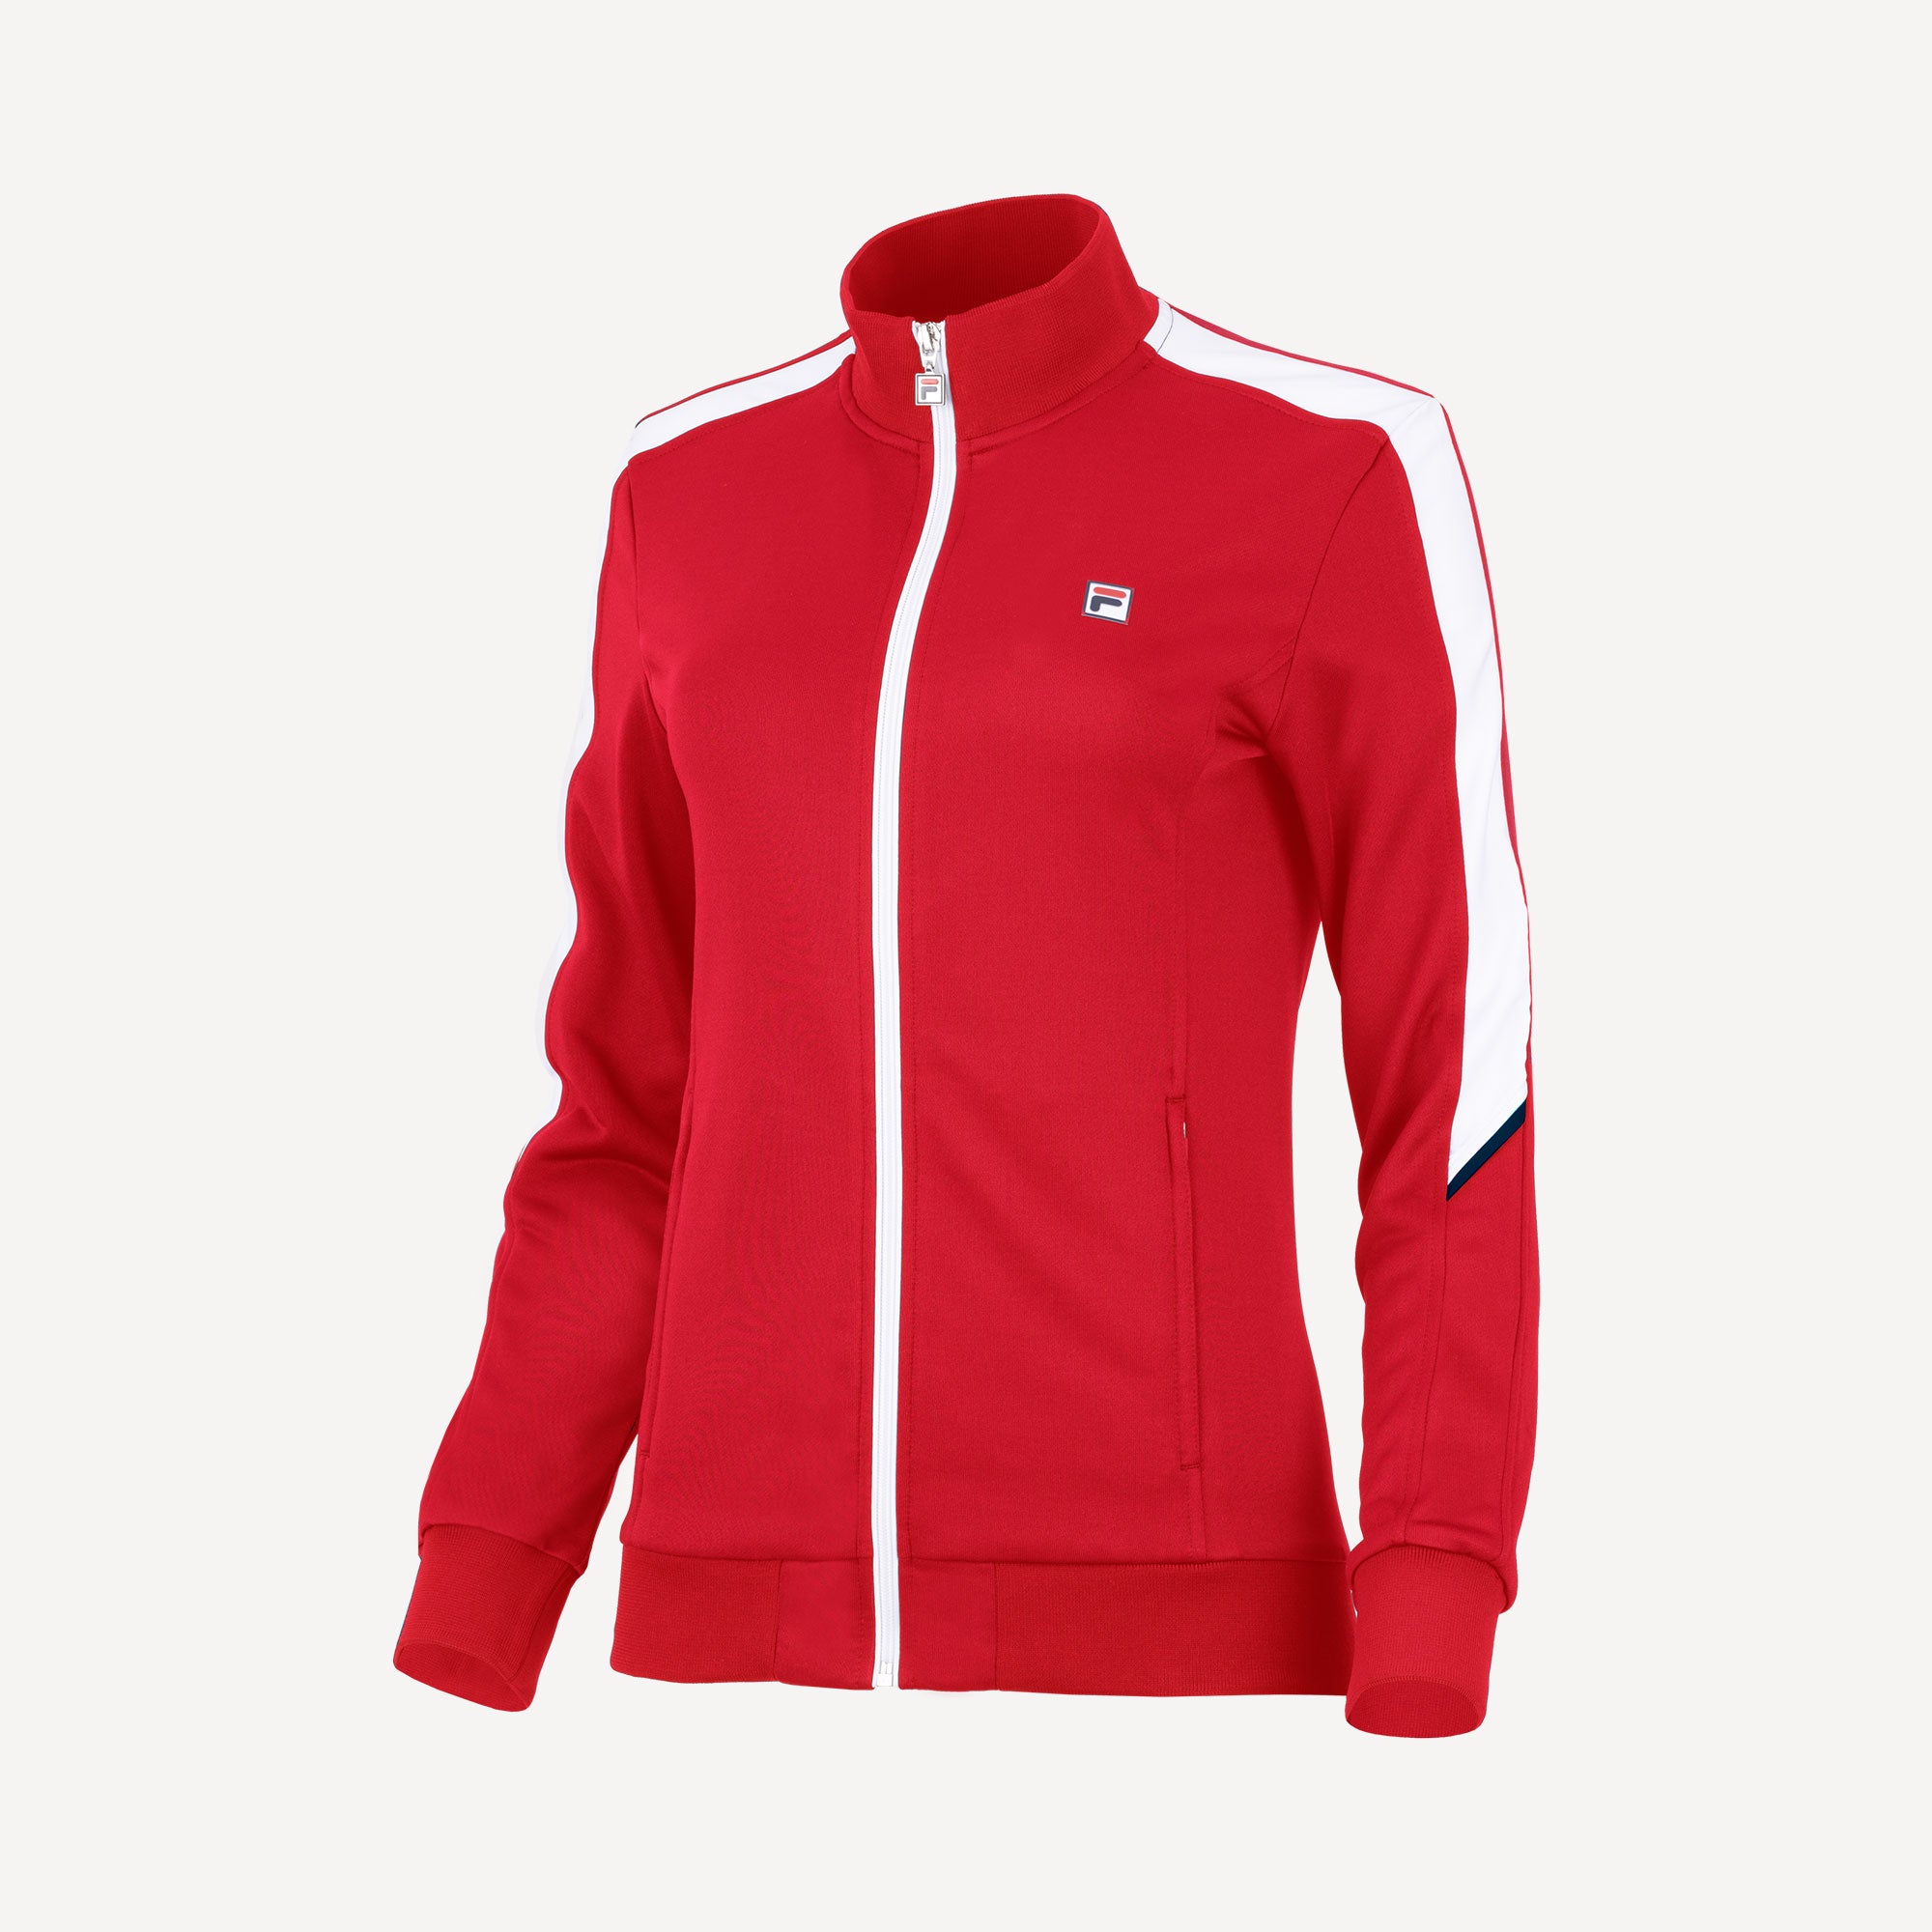 Fila Manuela Women's Tennis Jacket - Red (1)